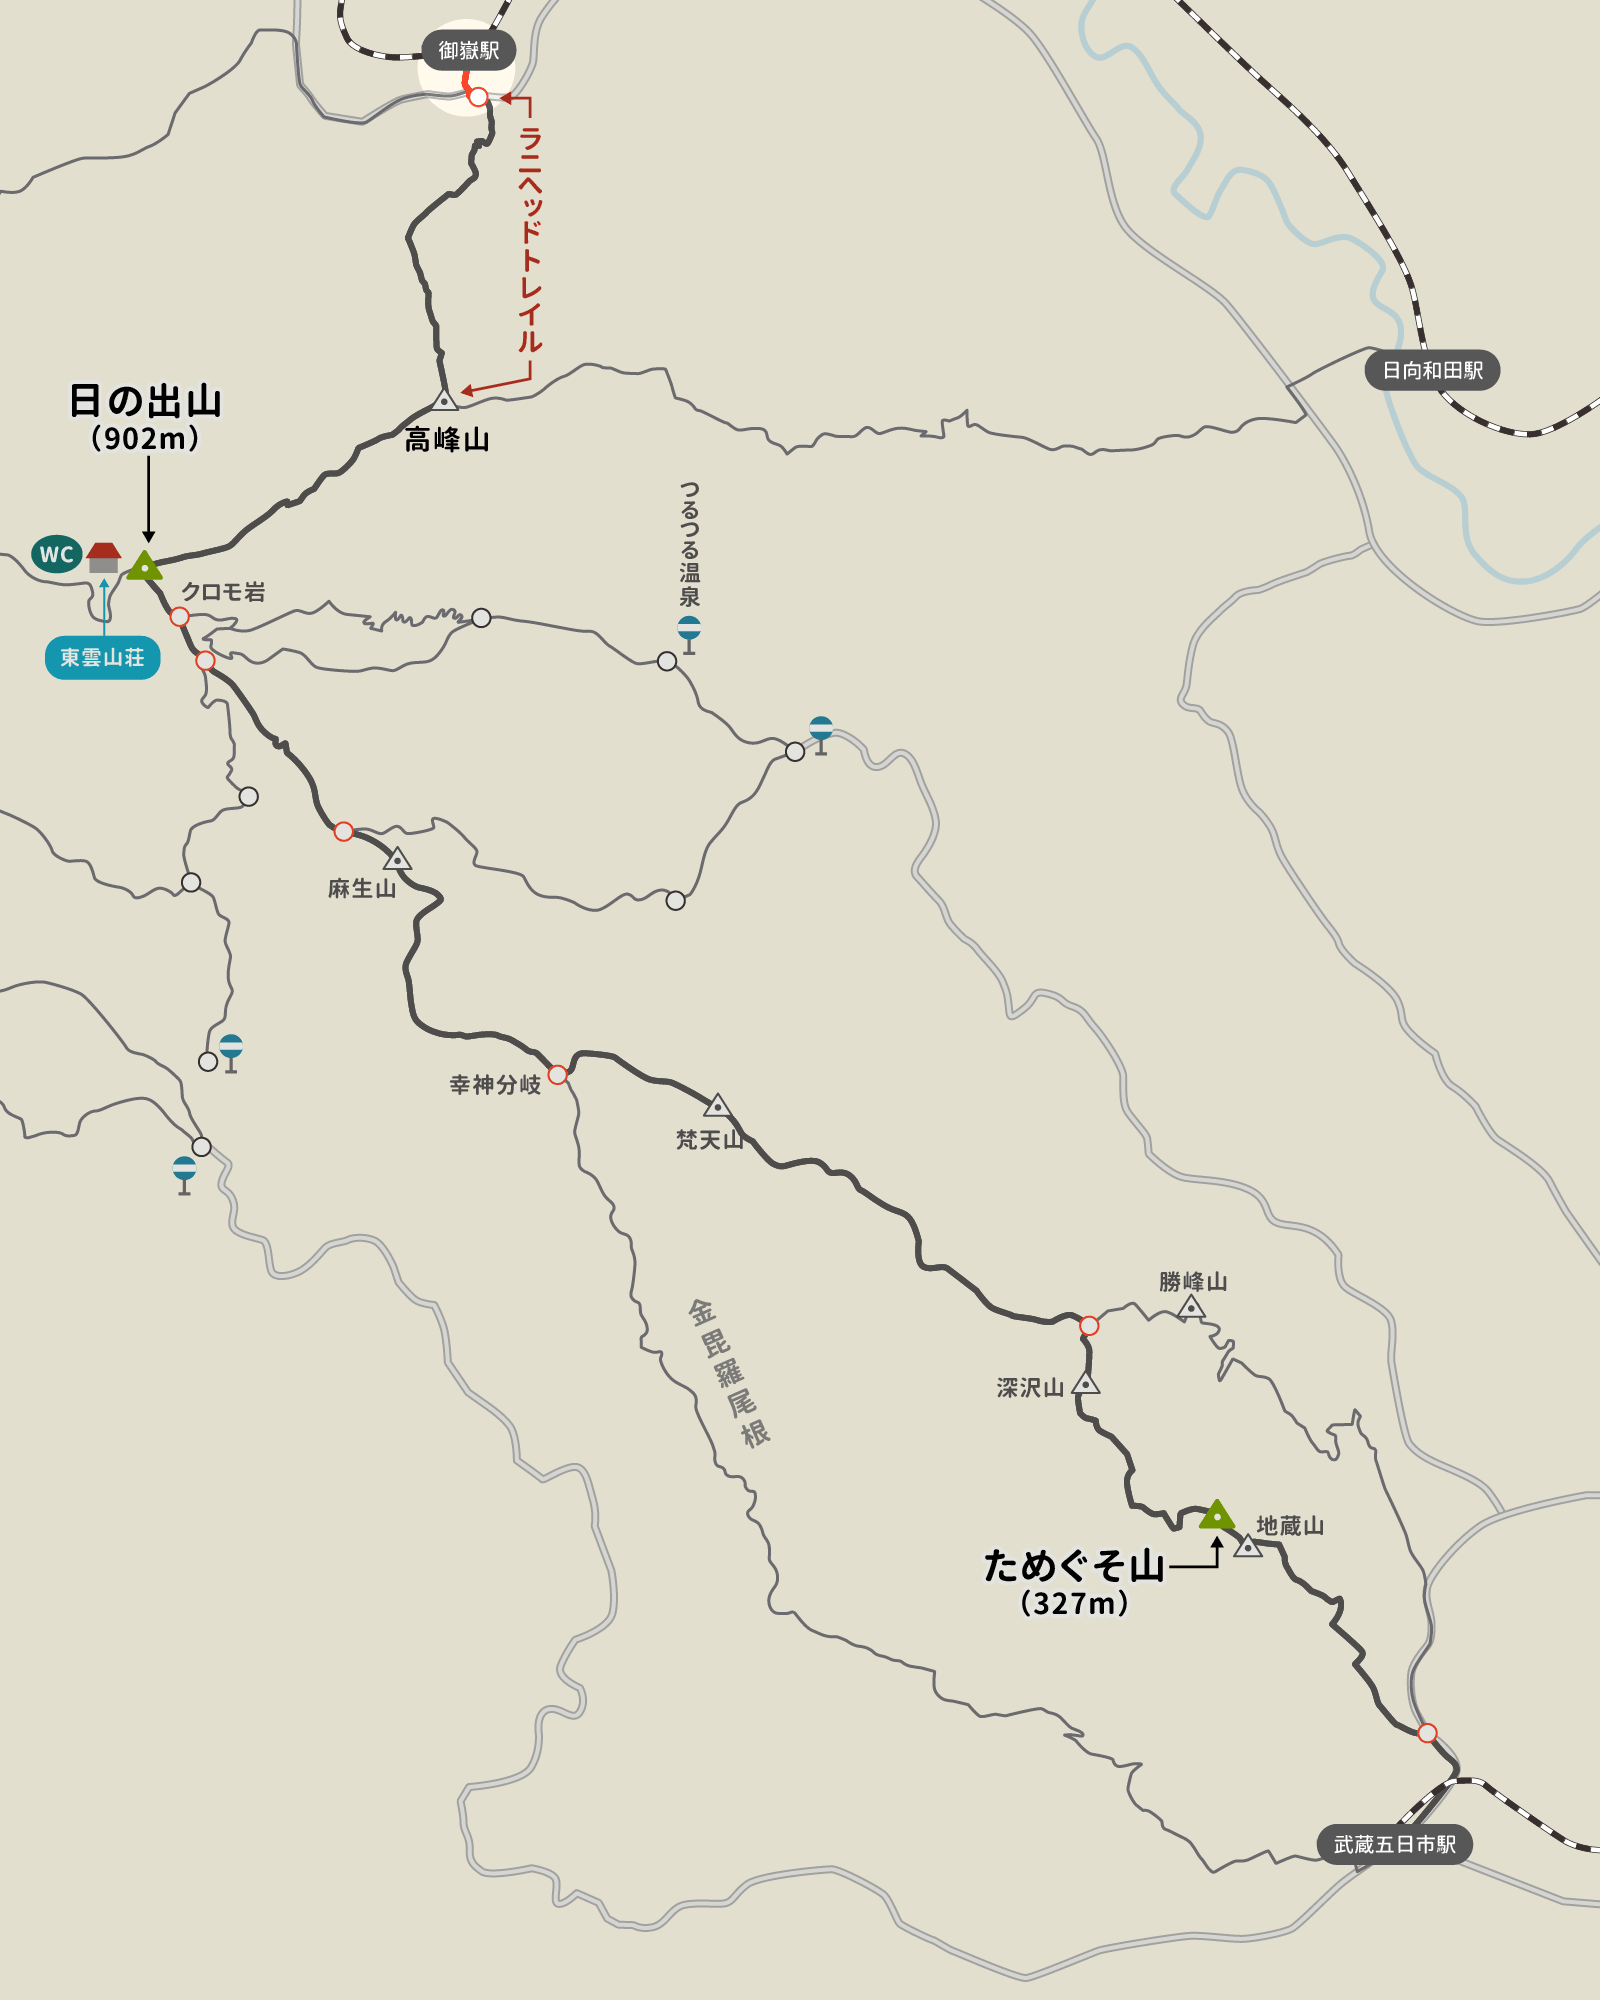 御嶽駅からラニヘッドトレイルを経て日の出山、ためぐそ山へのイラストマップ